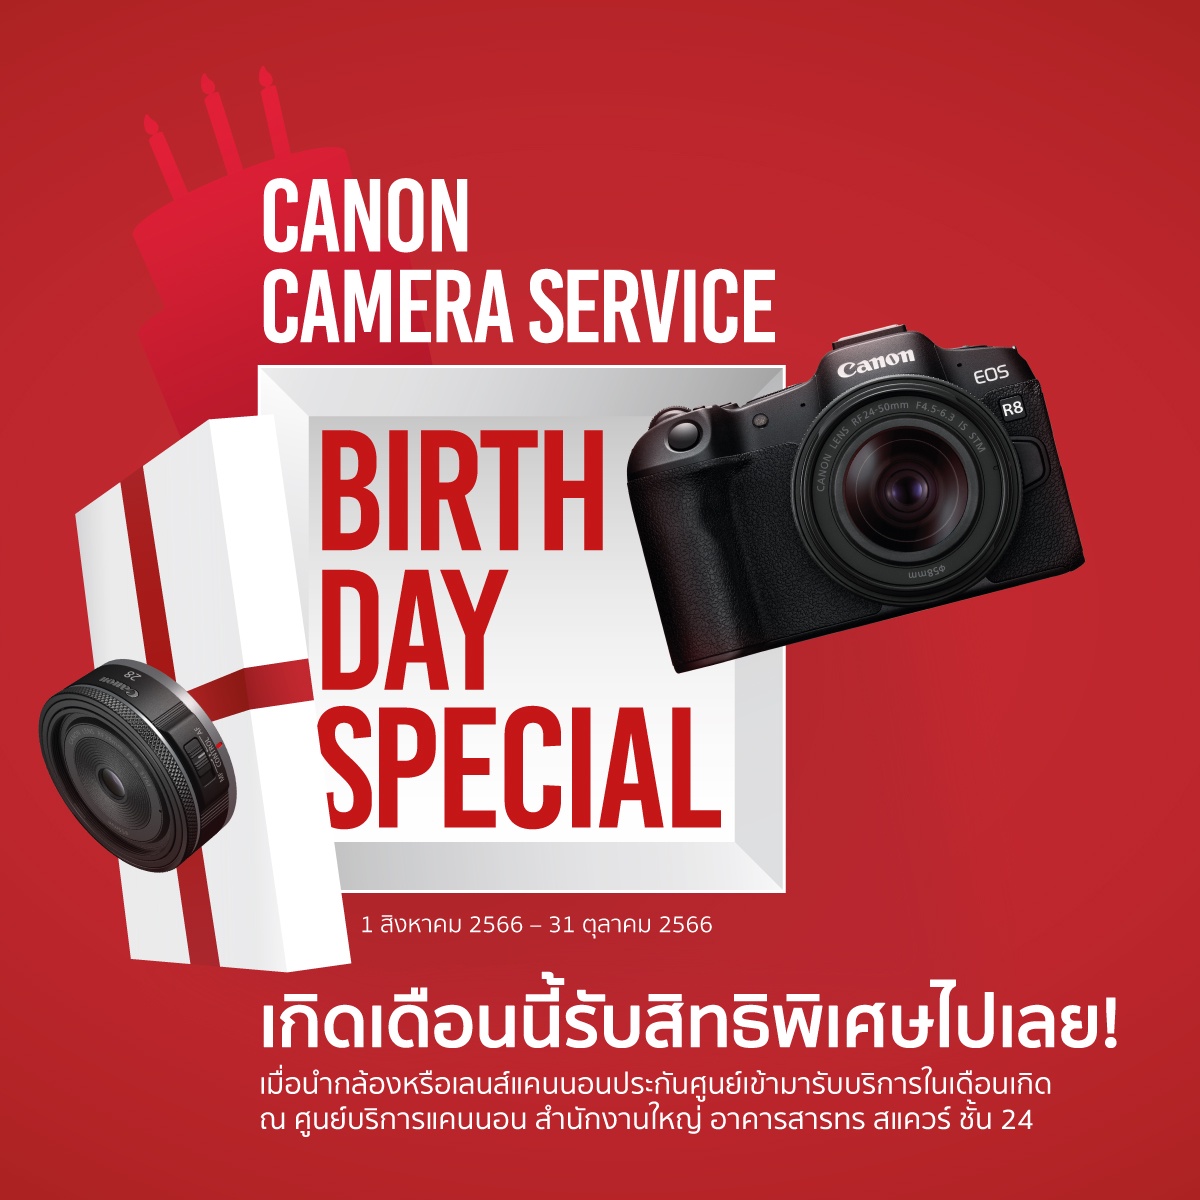 ของขวัญสุดพิเศษโดนใจช่างภาพ! แคนนอน จัดแคมเปญดีต่อใจ Canon Camera Service Birthday Special มอบส่วนลดค่าบริการและซ่อมด่วนฟรีในเดือนเกิดของลูกค้า